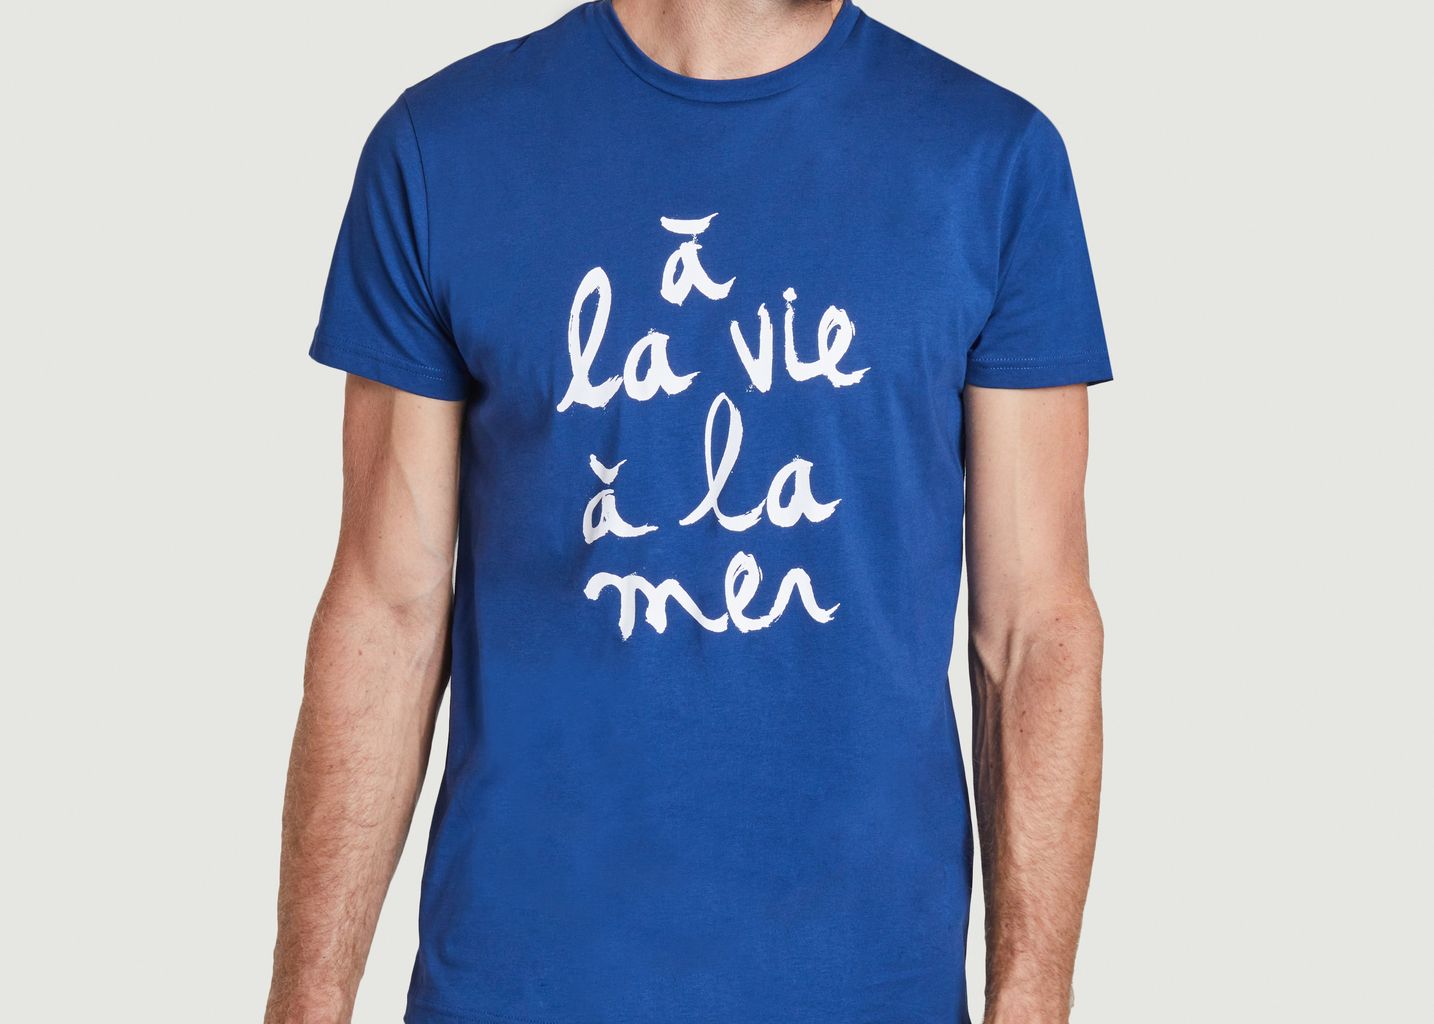 À la Vie T-shirt - Bask in the Sun